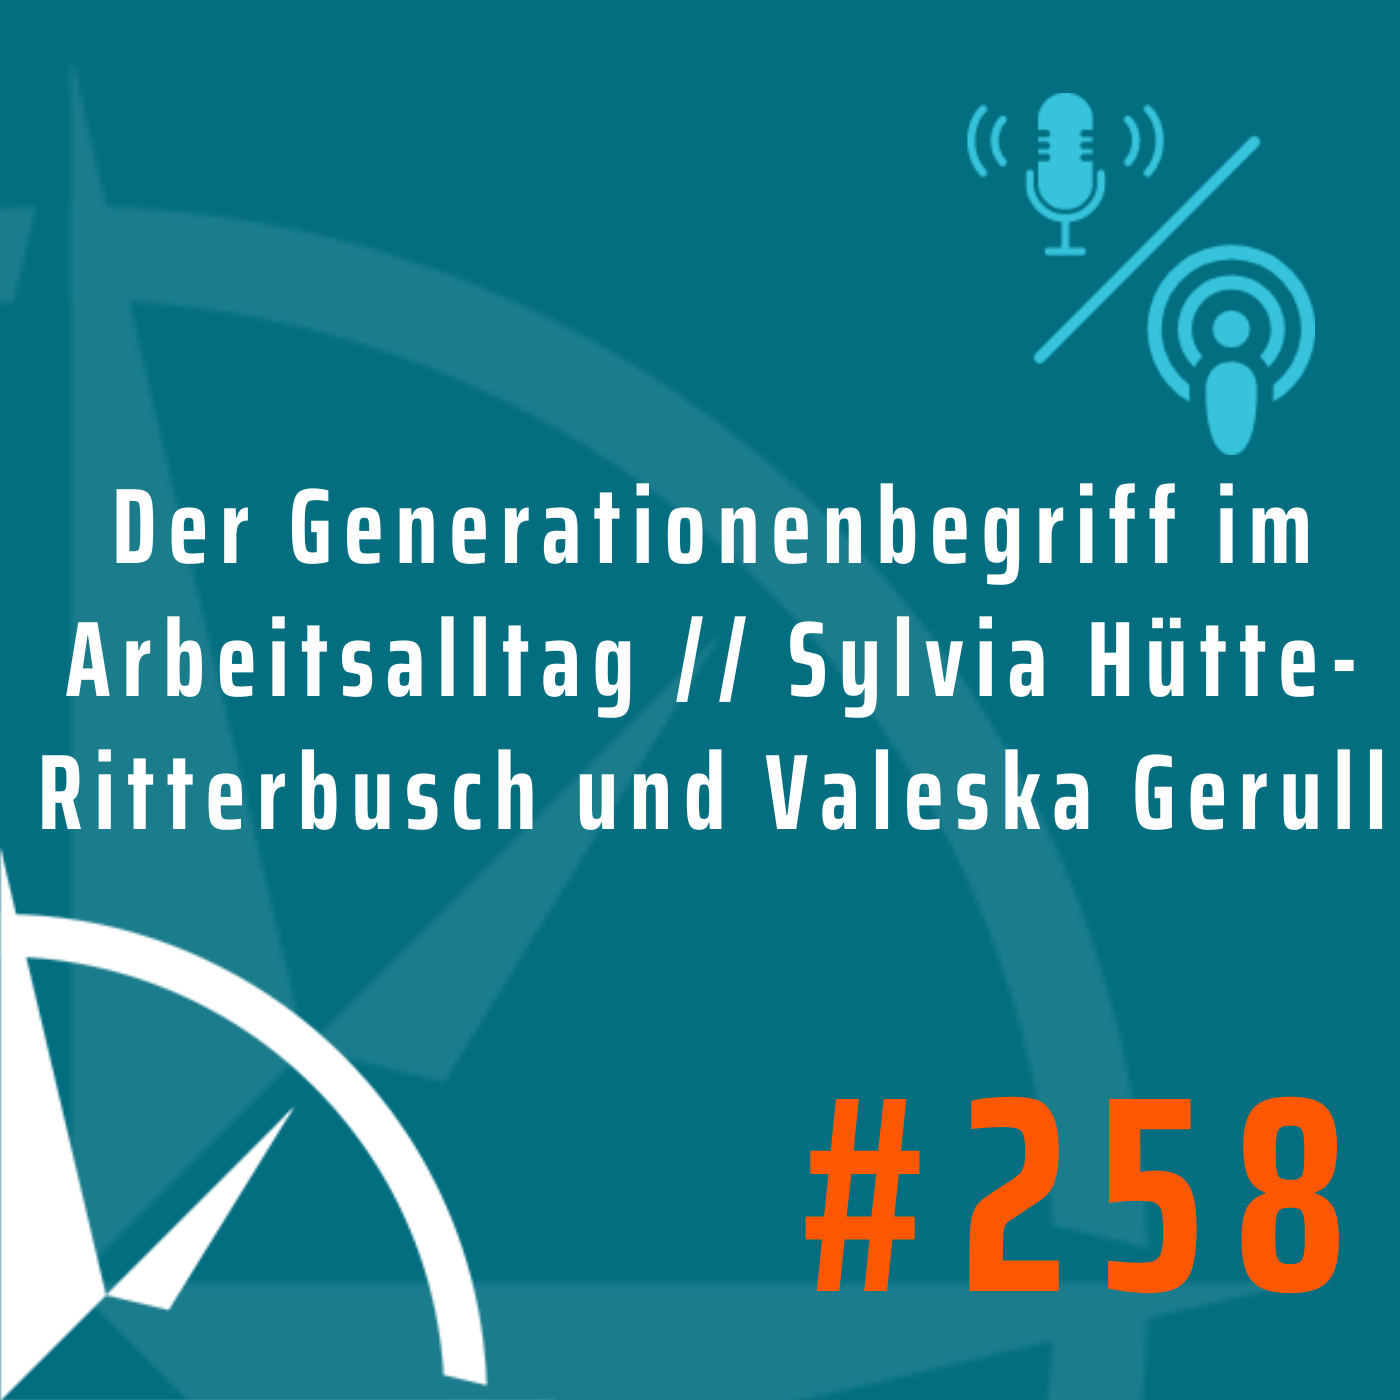 Der Generationenbegriff im Arbeitsalltag // Sylvia Hütte-Ritterbusch und Valeska Gerull